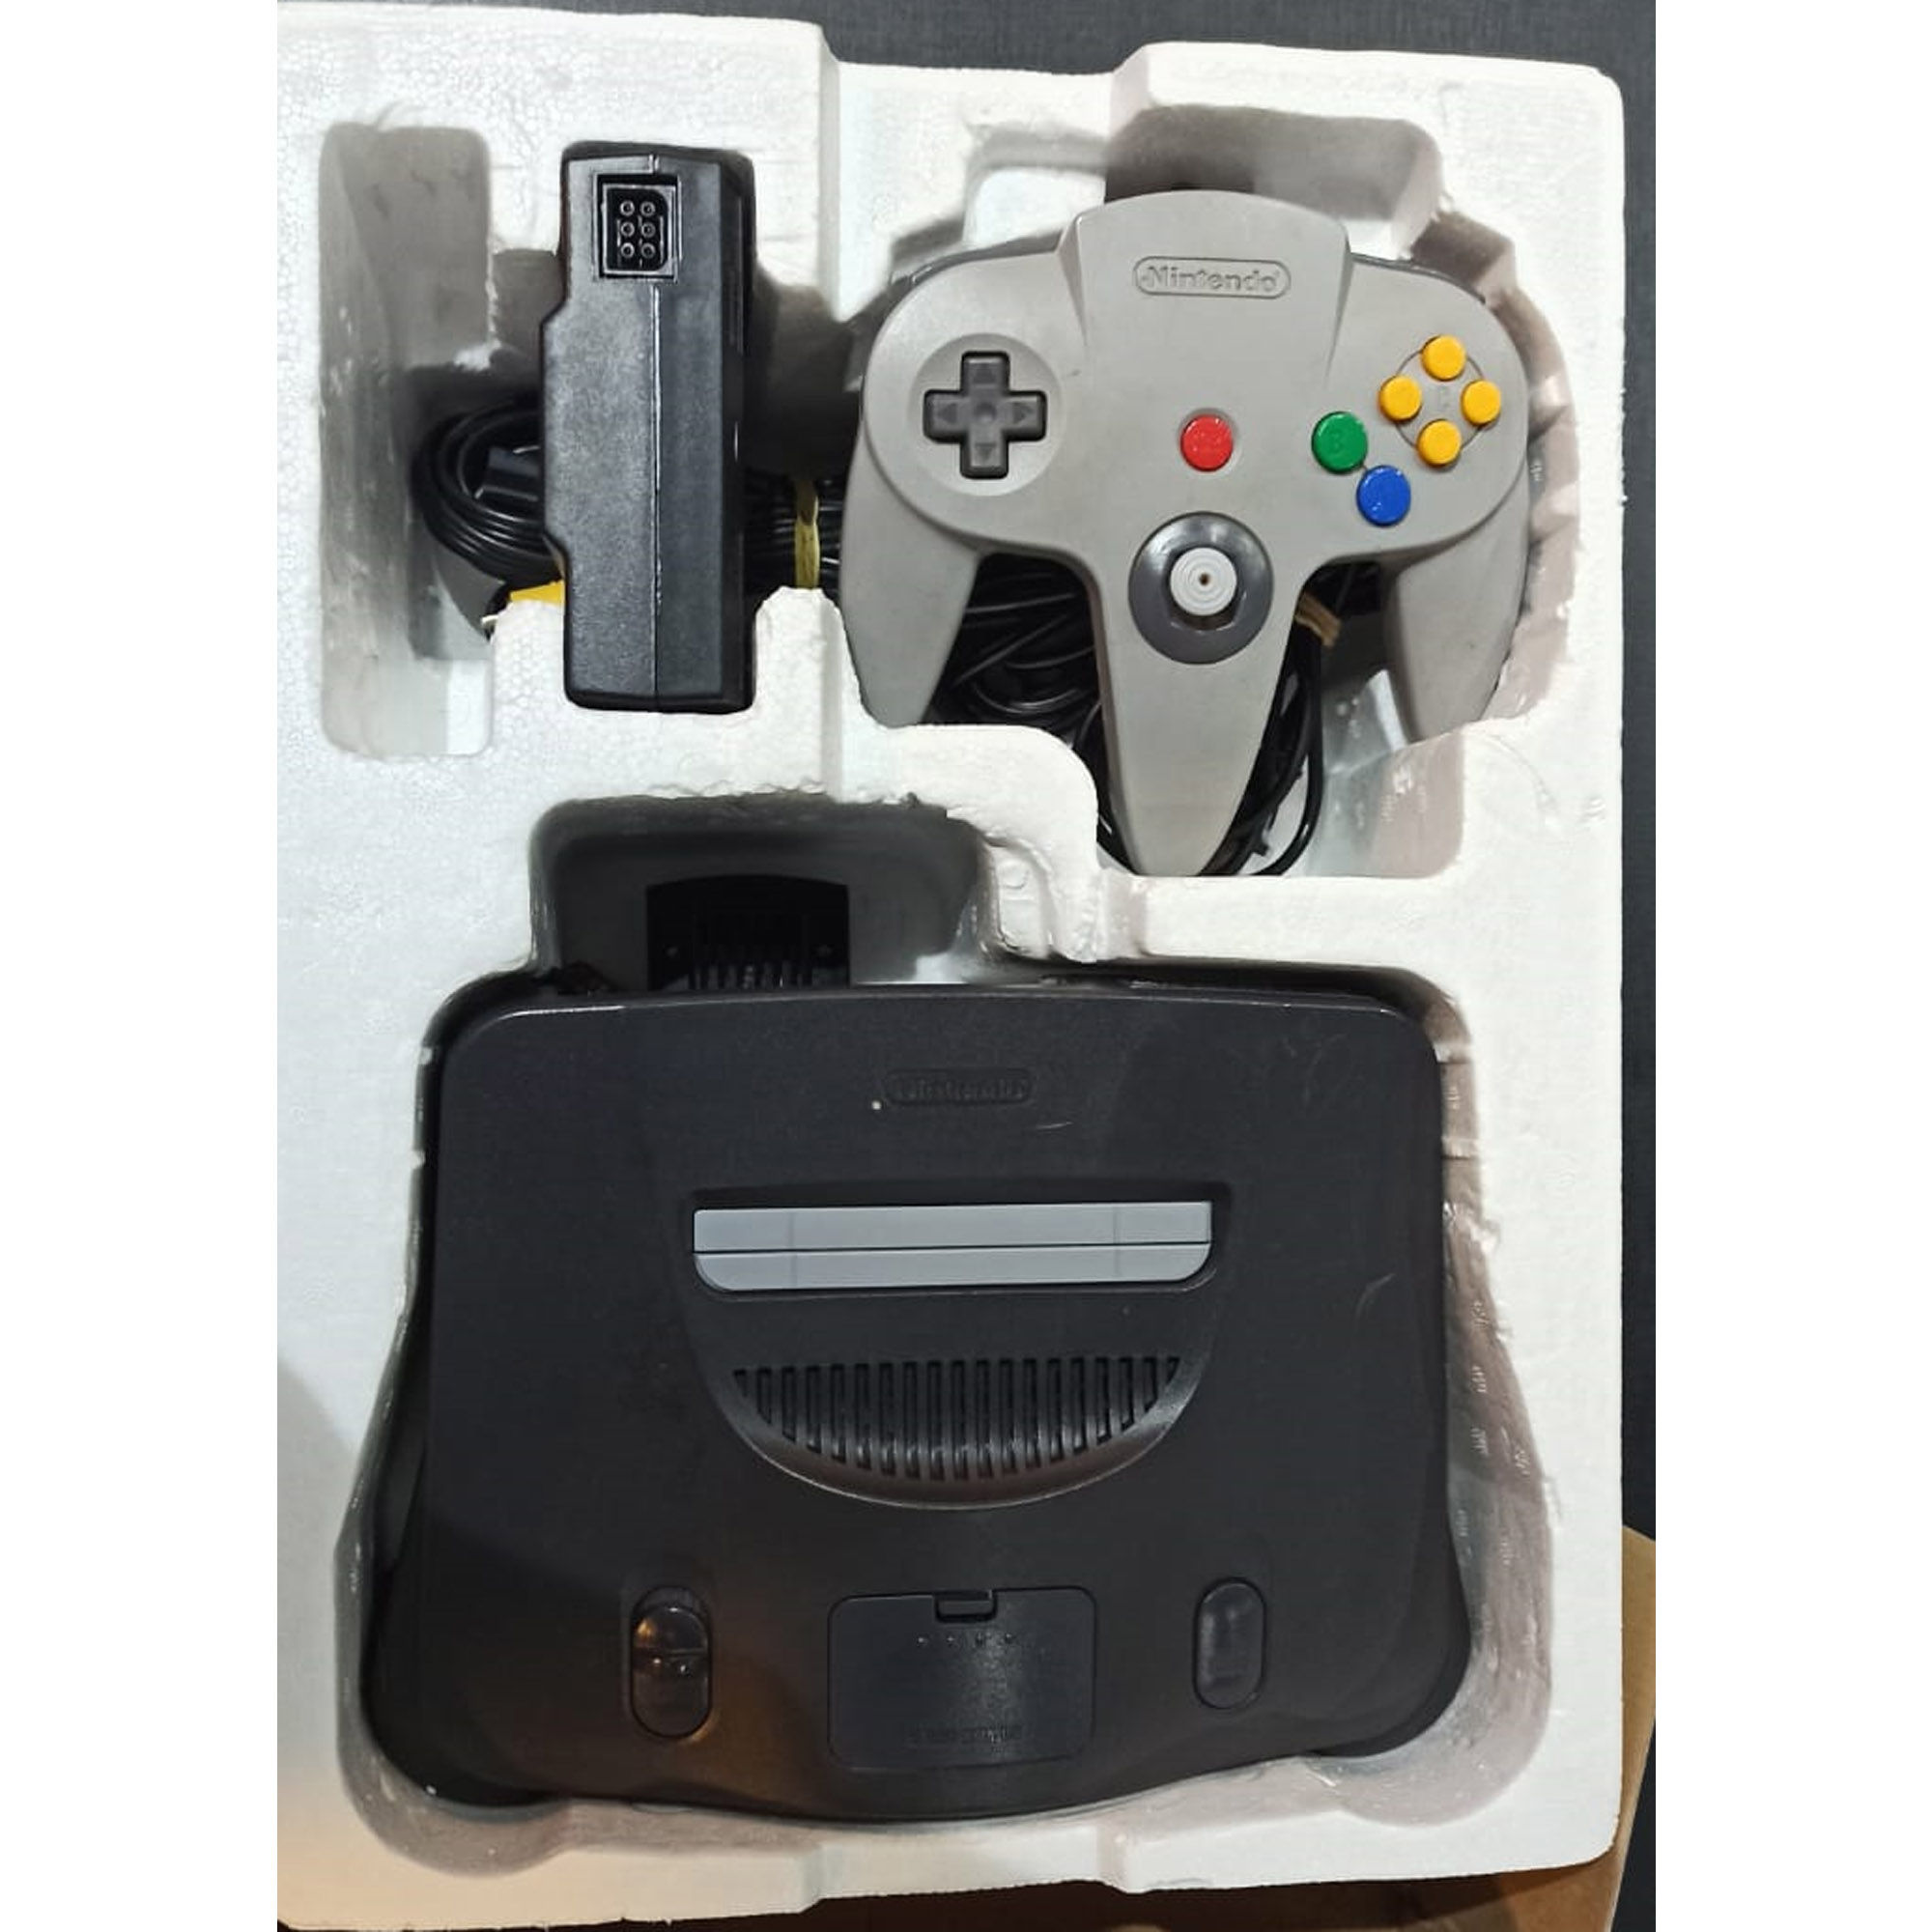 Videogame Nintendo 64 Original Na Caixa